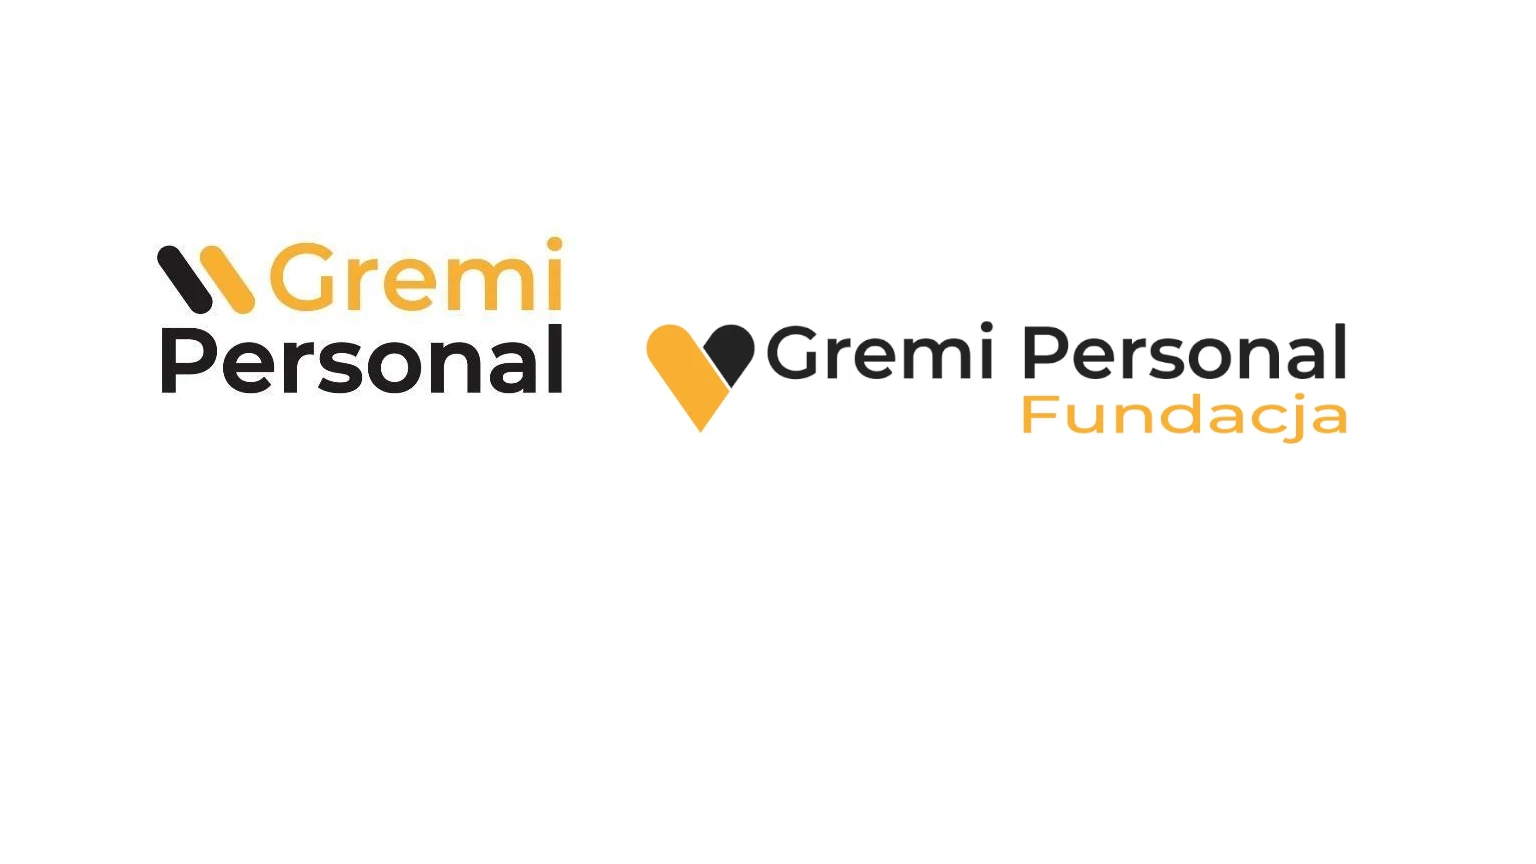 Gremi Personal daje pracę, Fundacja Gremi Personal – nadzieję.